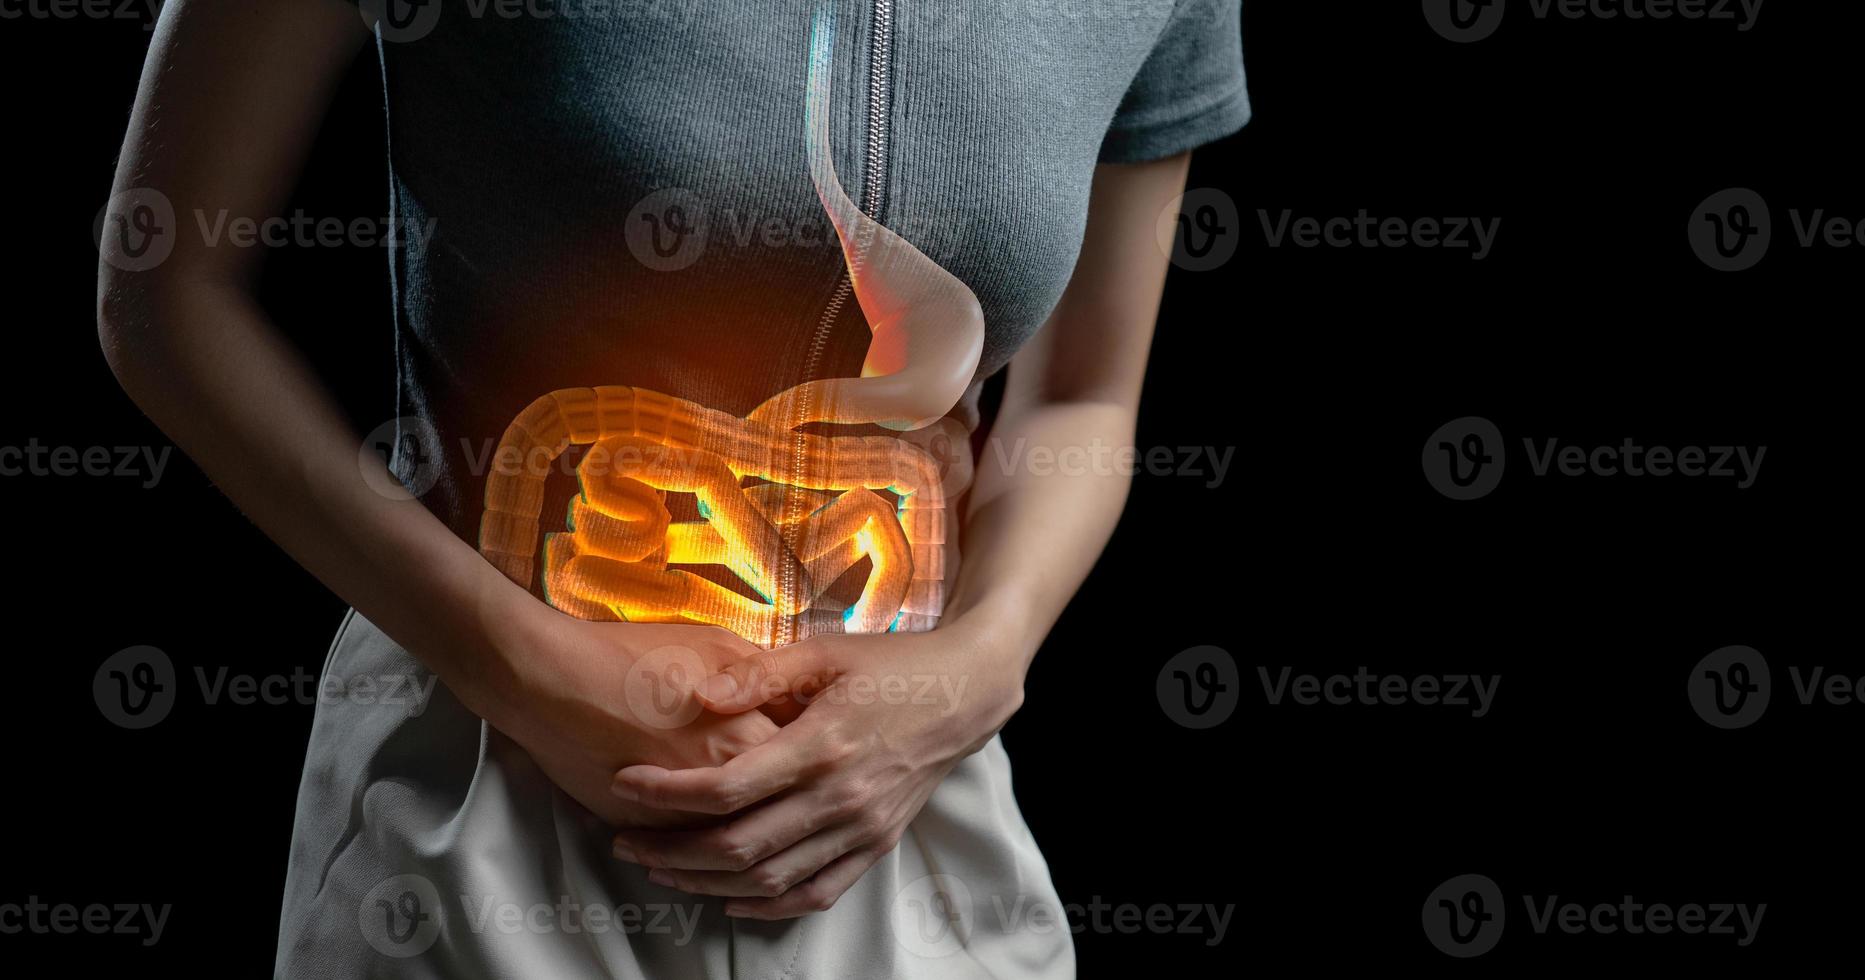 abdominal smärta kvinna, Foto av stor inälvor på kvinna kropp, magont diarre symptom, menstruations- period kramp eller mat förgiftning. hälsa vård begrepp.